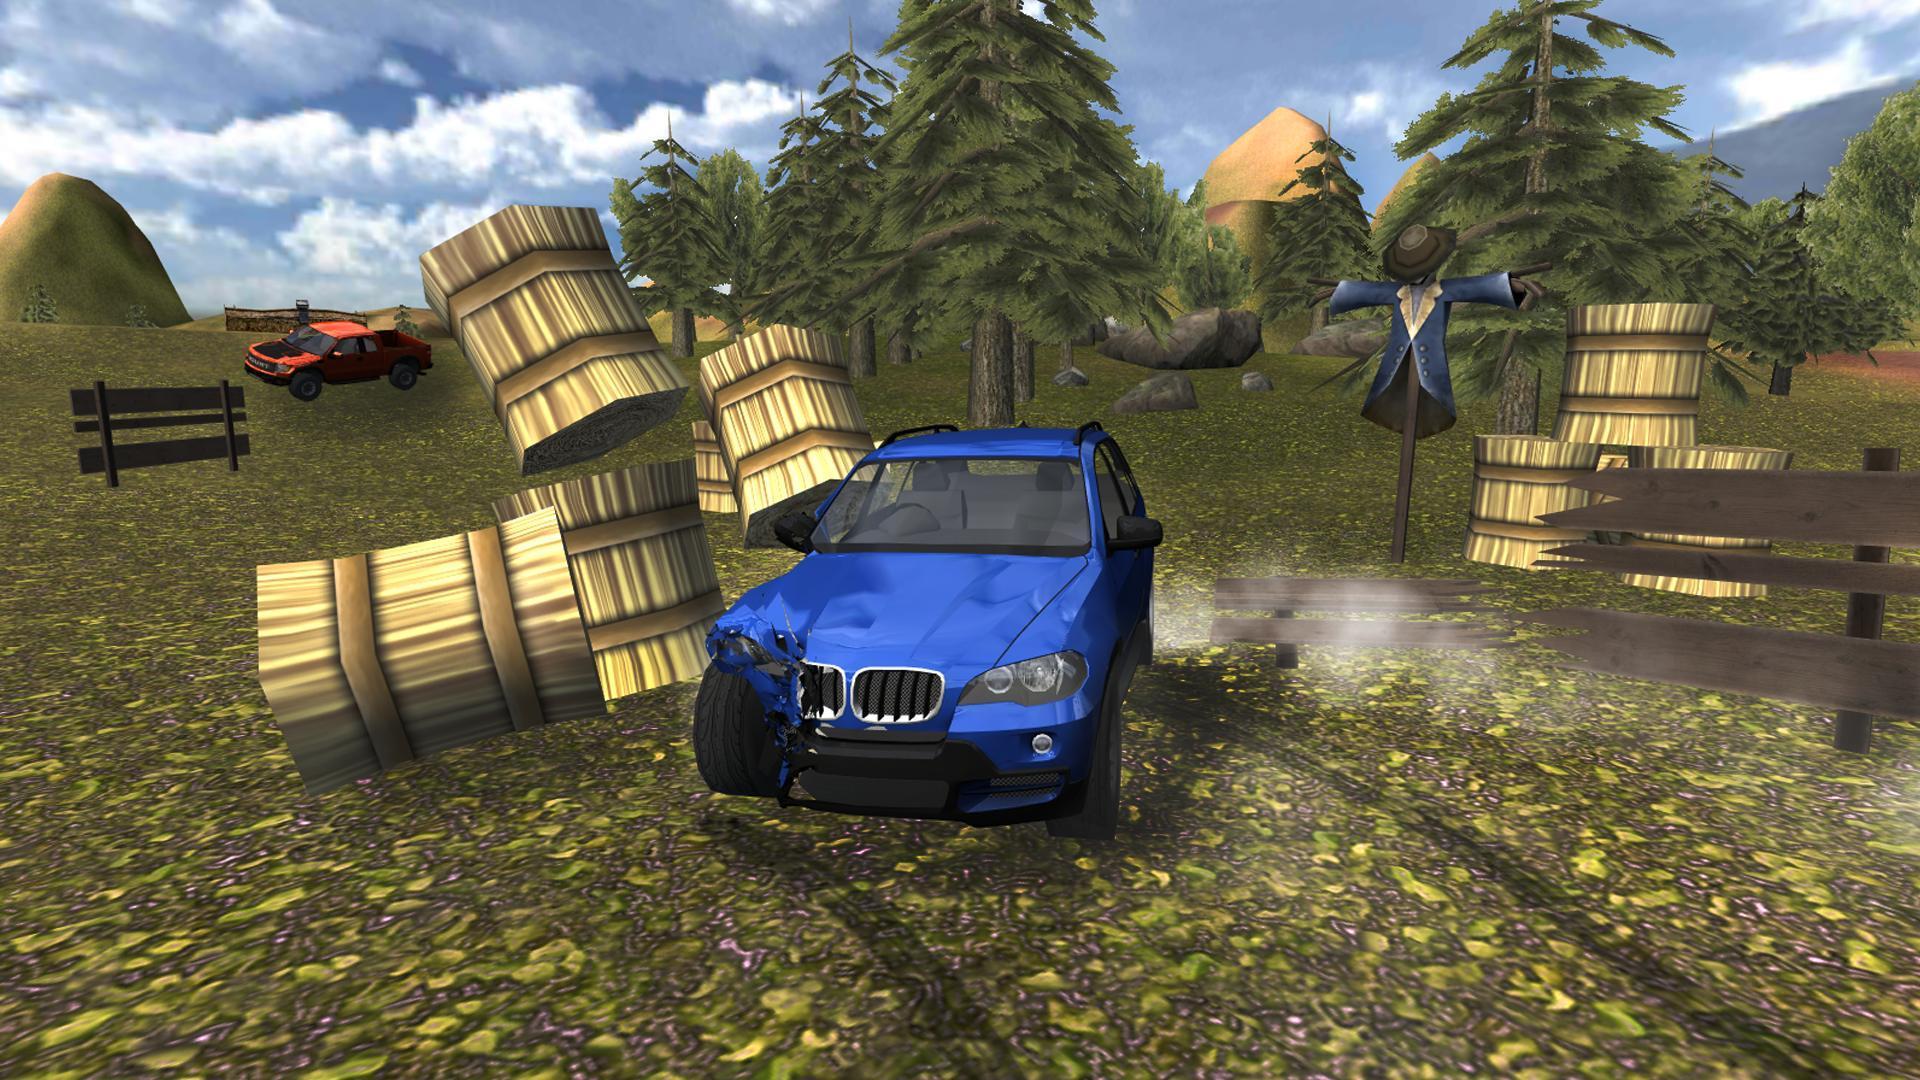 Симулятор машины 5. Extreme SUV Driving Simulator 1.1. SUV 4x4 симулятор. Extreme SUV Driving Simulator 2015. Extreme SUV car Driving Simulator.